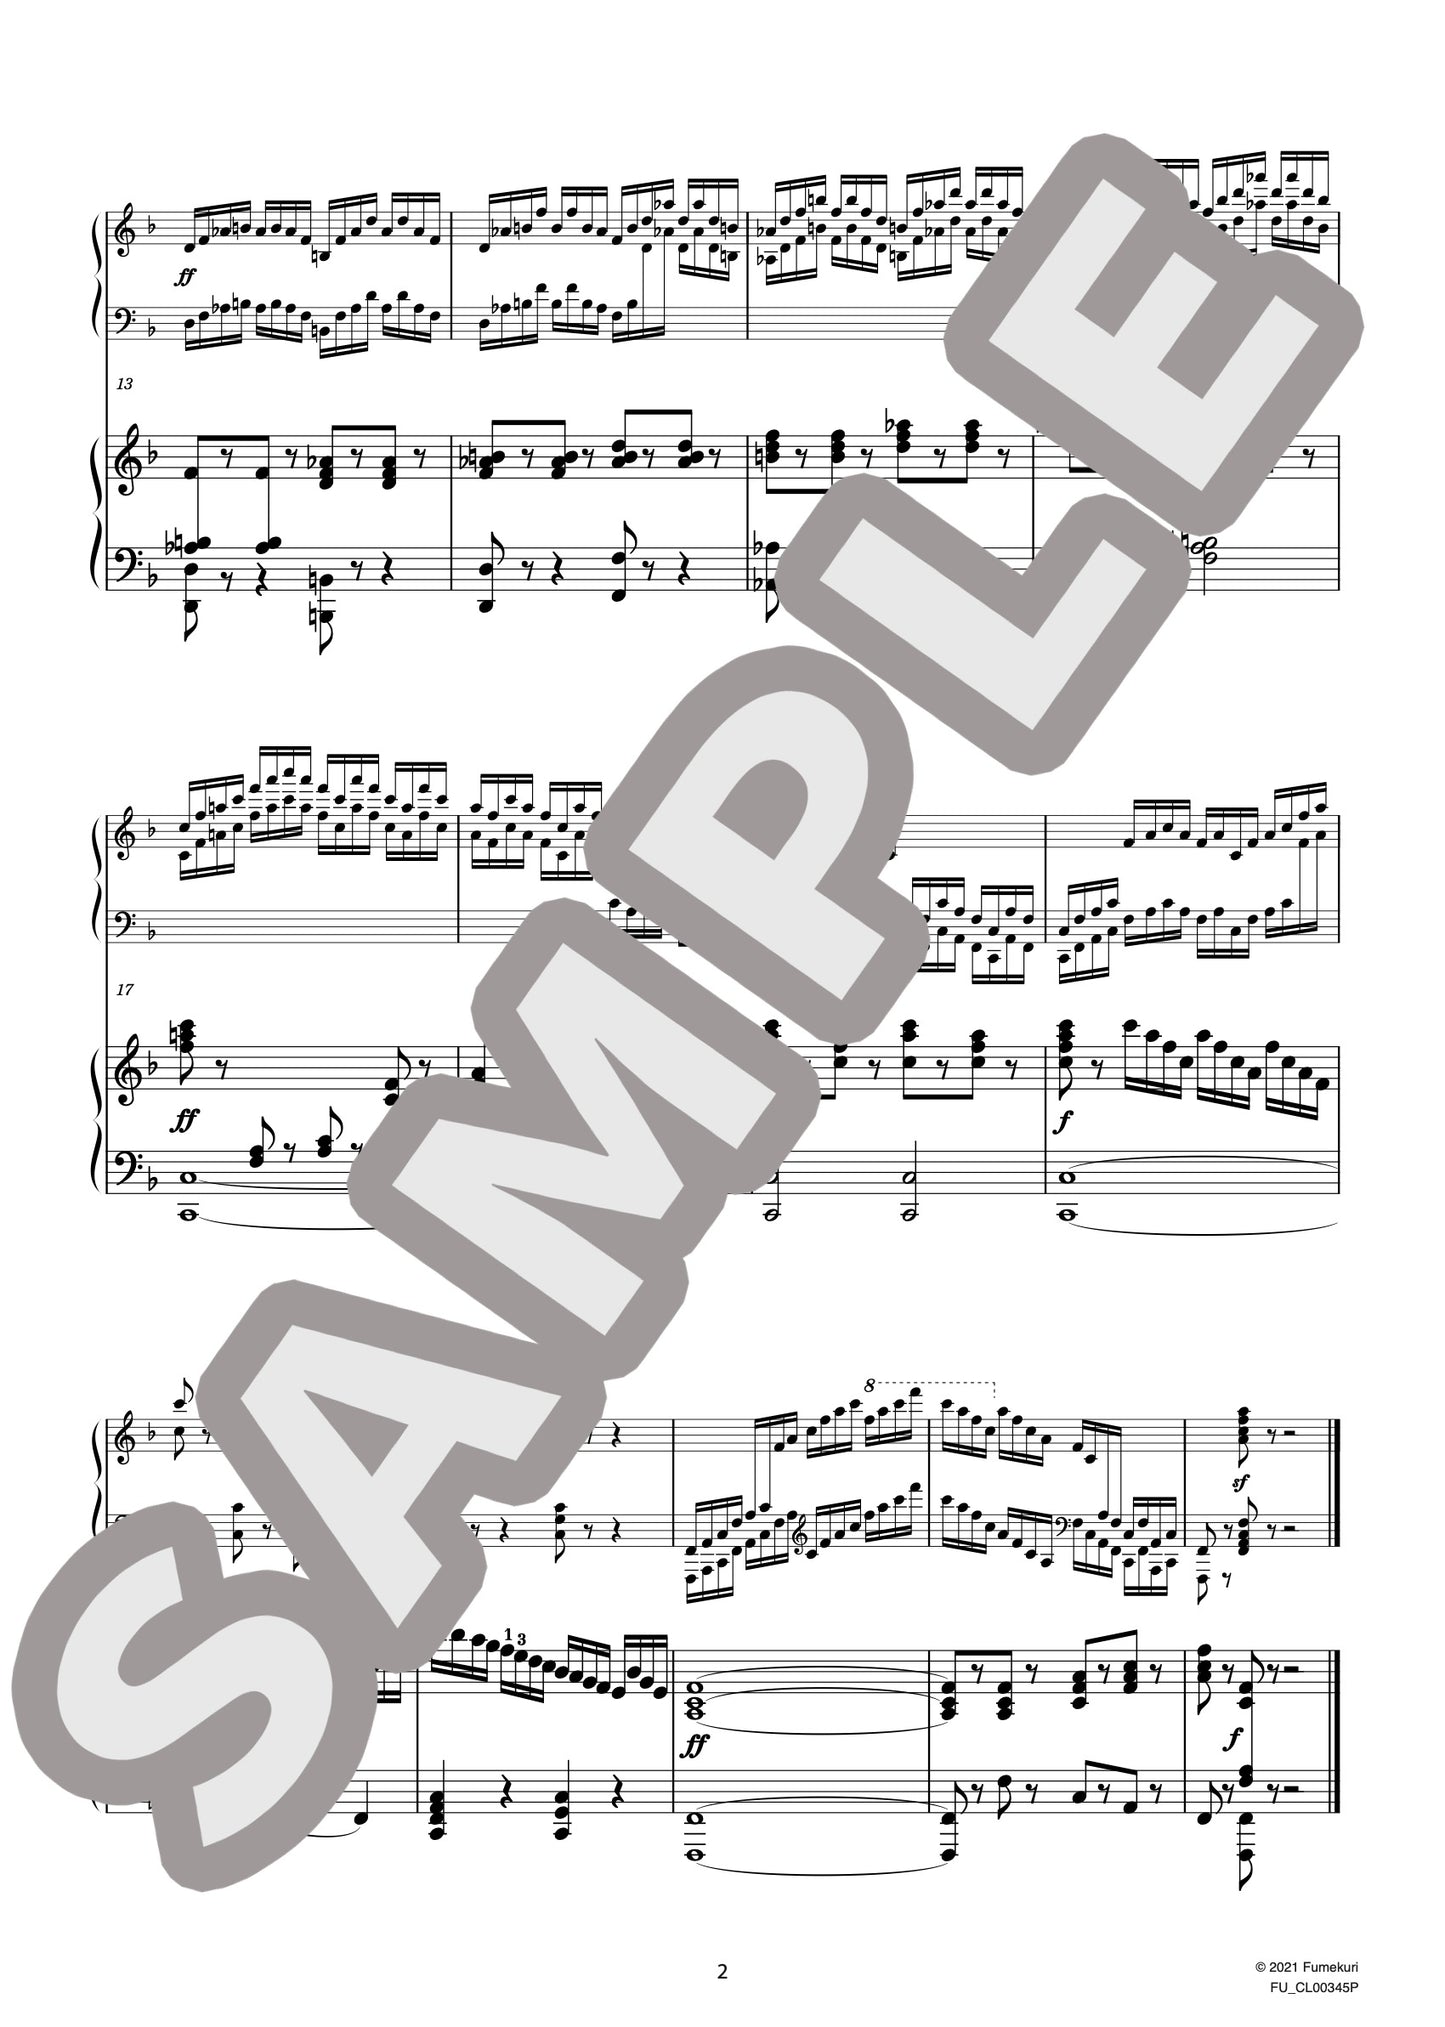 2台のピアノのための速度練習曲（40番練習曲）作品299b 第12番（CZERNY) / クラシック・オリジナル楽曲【中上級】